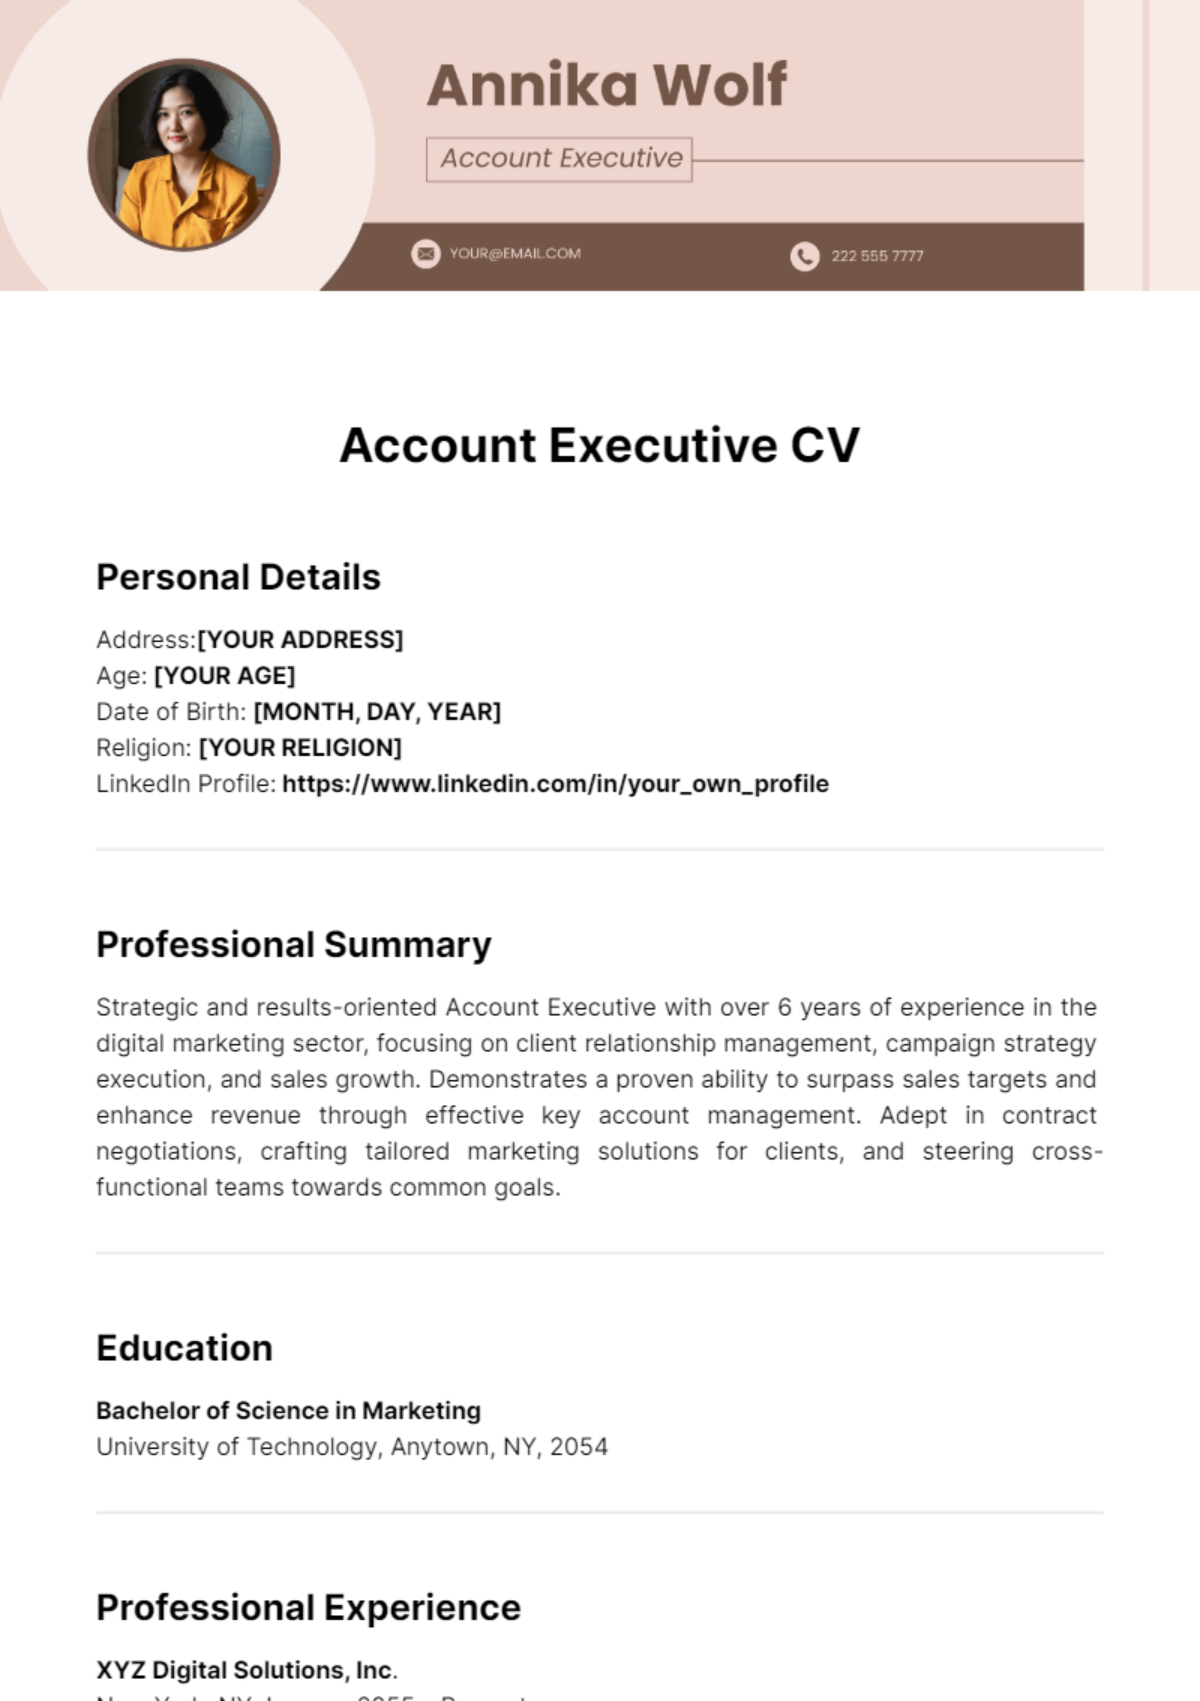 Account Executive CV Template